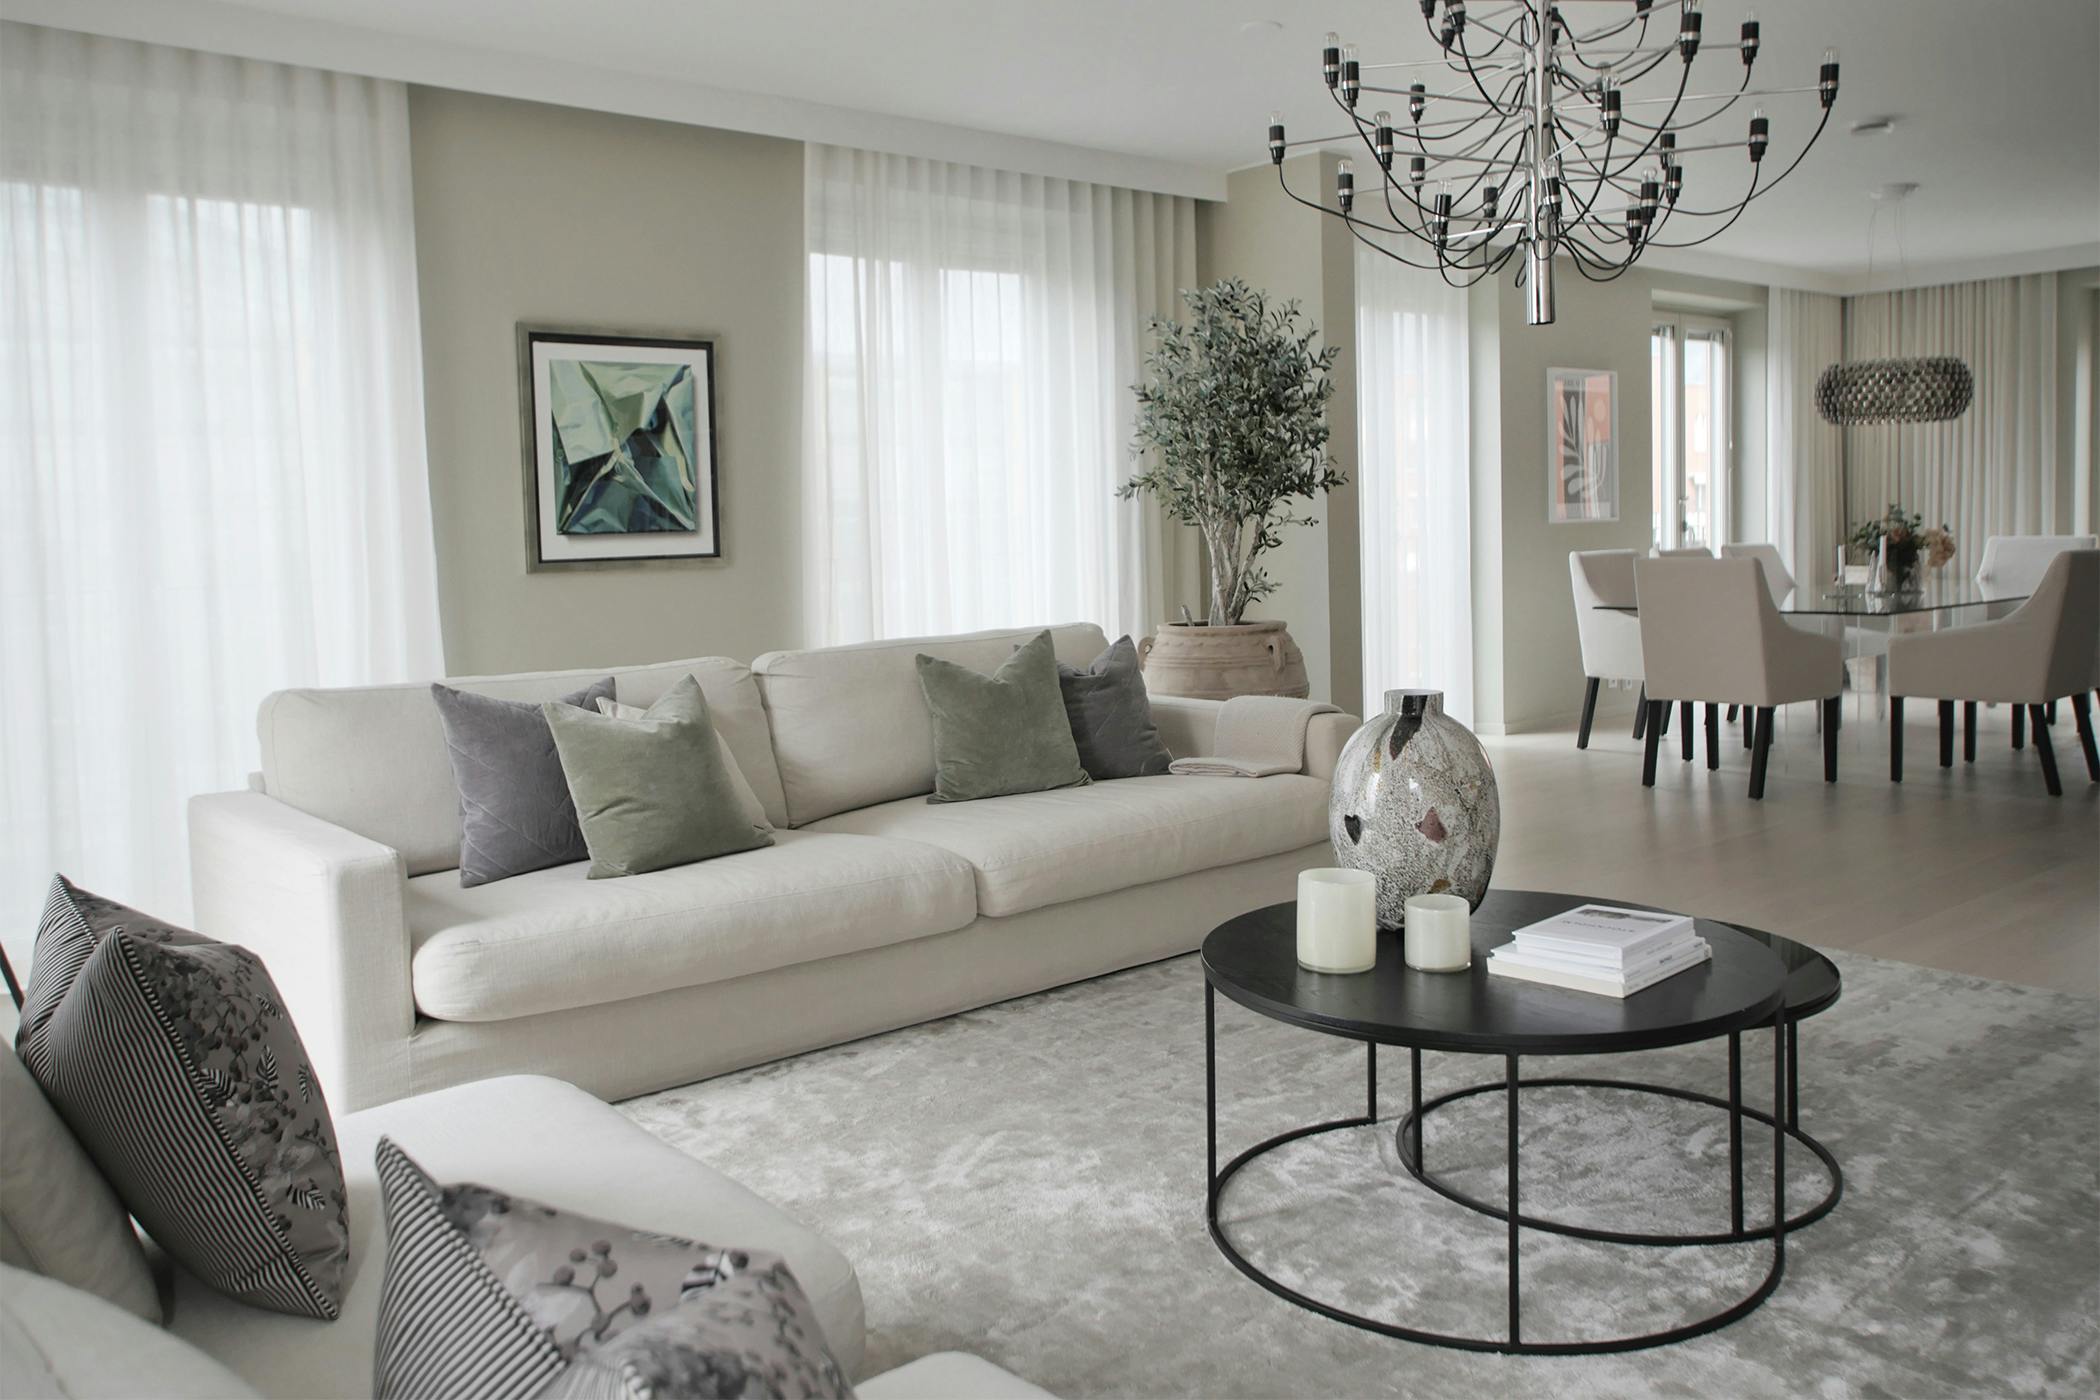 285cm bred soffa i vit linneblandning med 110cm djupa sittkuddar och höga ryggkuddar. 